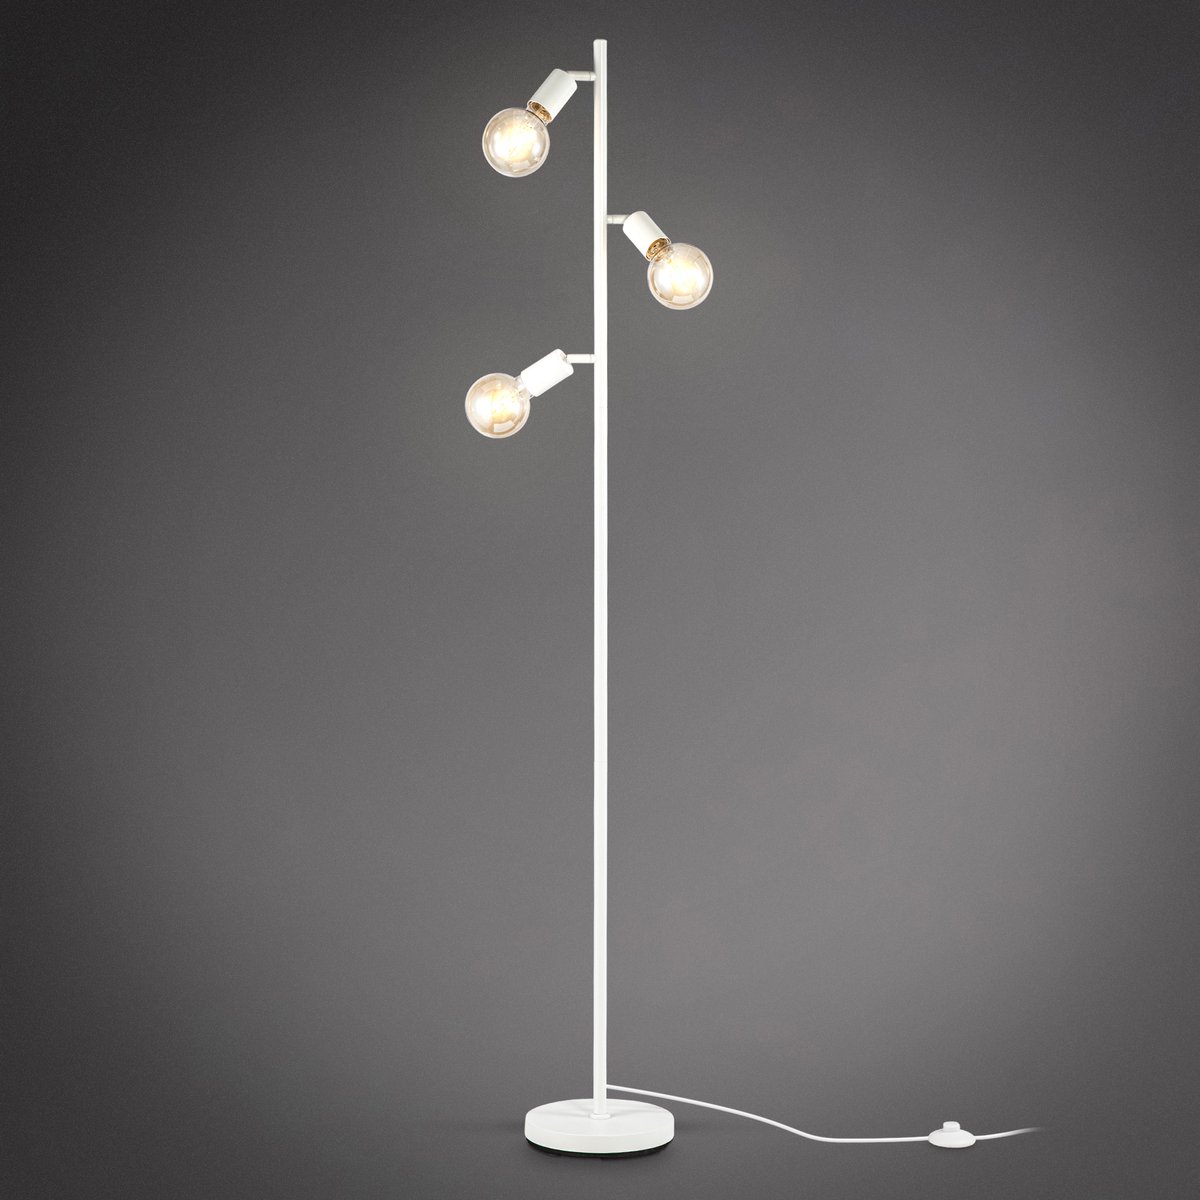 B.K.Licht - Witte Vloerlamp - voor binnen - voor woonkamer - industriële staande lamp - staanlamp - metalen leeslamp - draaibar - met 3 lichtpunten - E27 fitting - excl. lichtbronnen